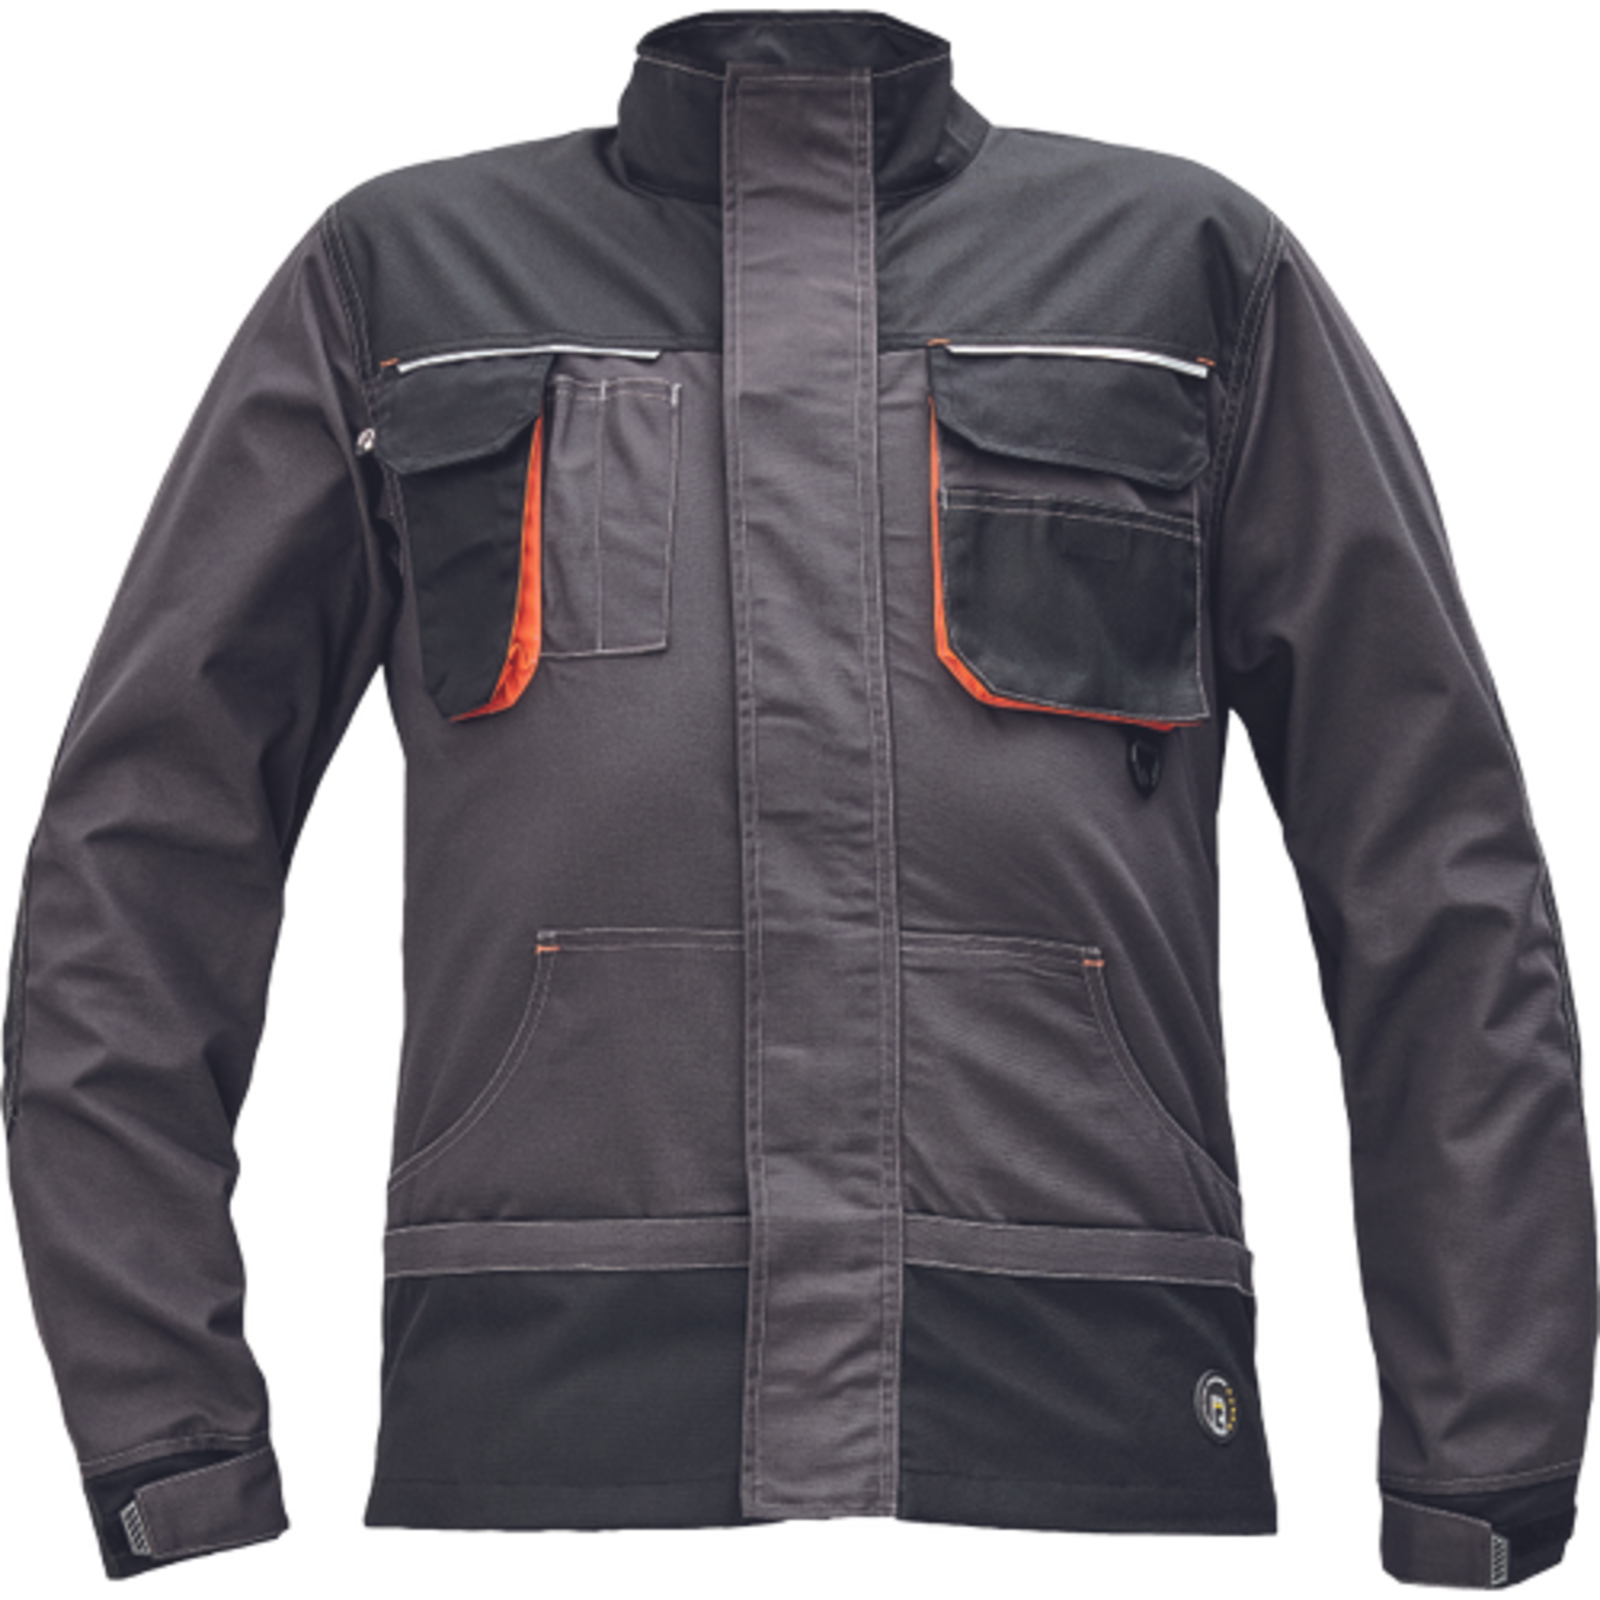 Odolná montérková bunda Emerton Plus - veľkosť: 64, farba: antracit/oranžová